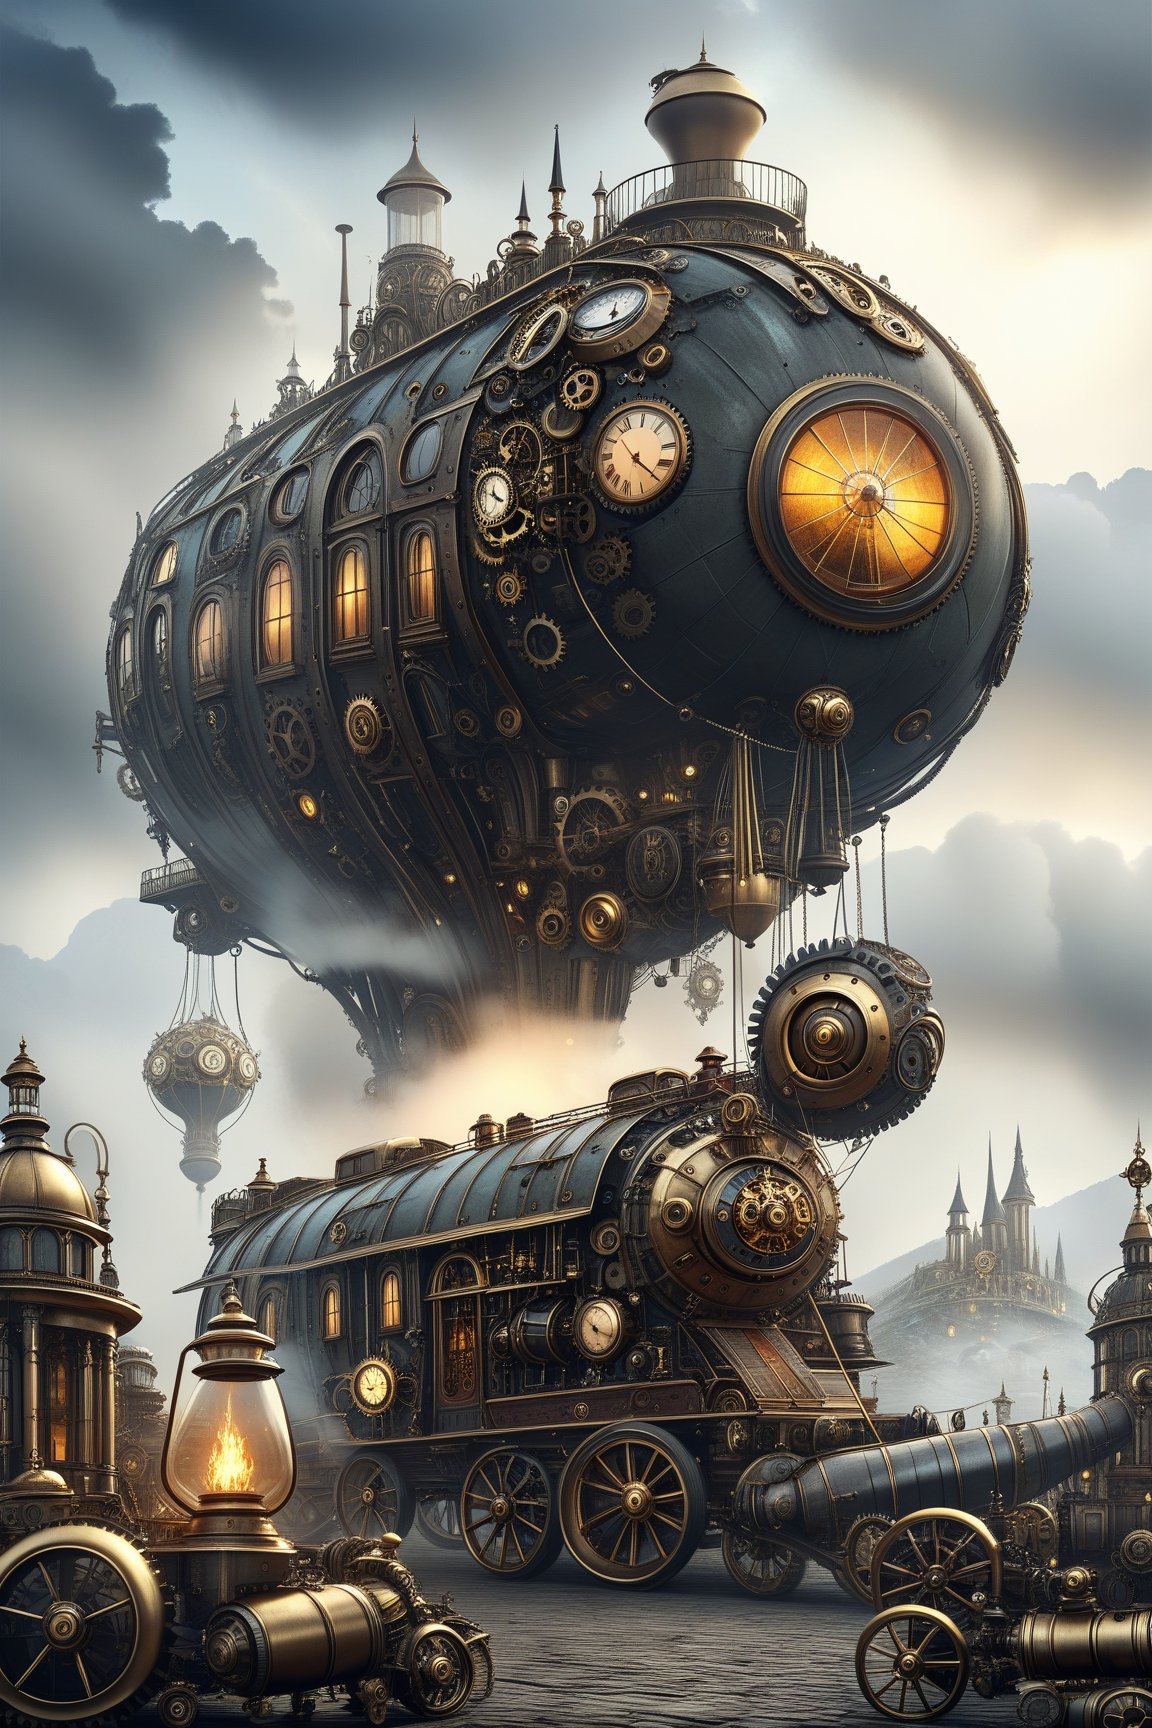 create a beautiful magical steampunk fantasy scene where you can evidence Una caravana de vehículos con ruedas gigantes y velas de vapor, viajando por desiertos de engranajes y ciudades errantes. Mechanical,DonMSt34mPXL